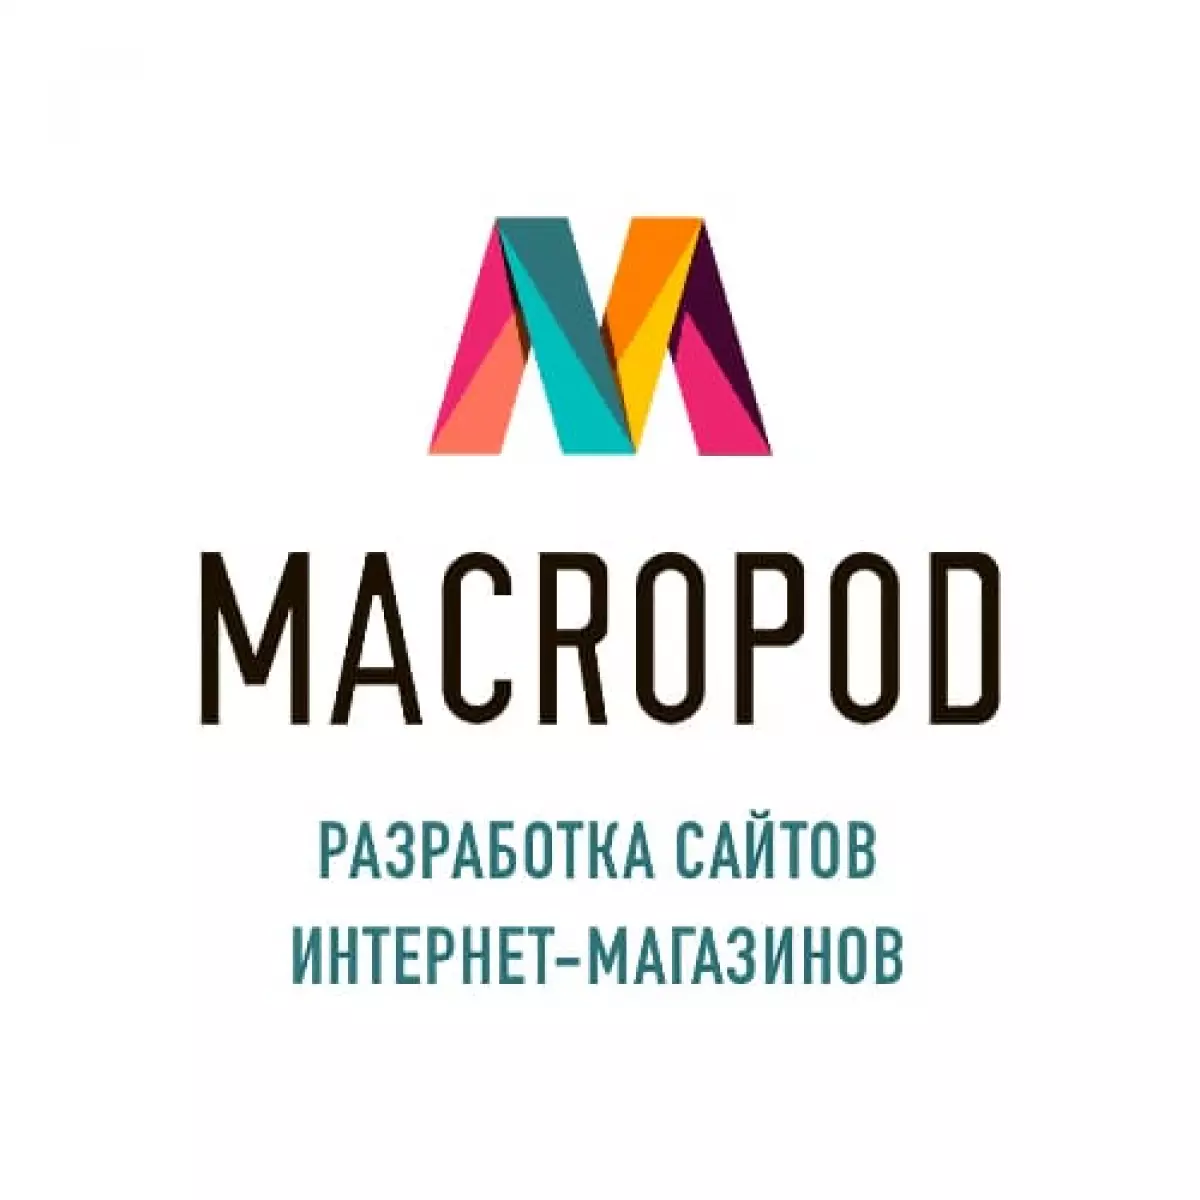 Веб студия Macropod - разработка и поддержка сайтов